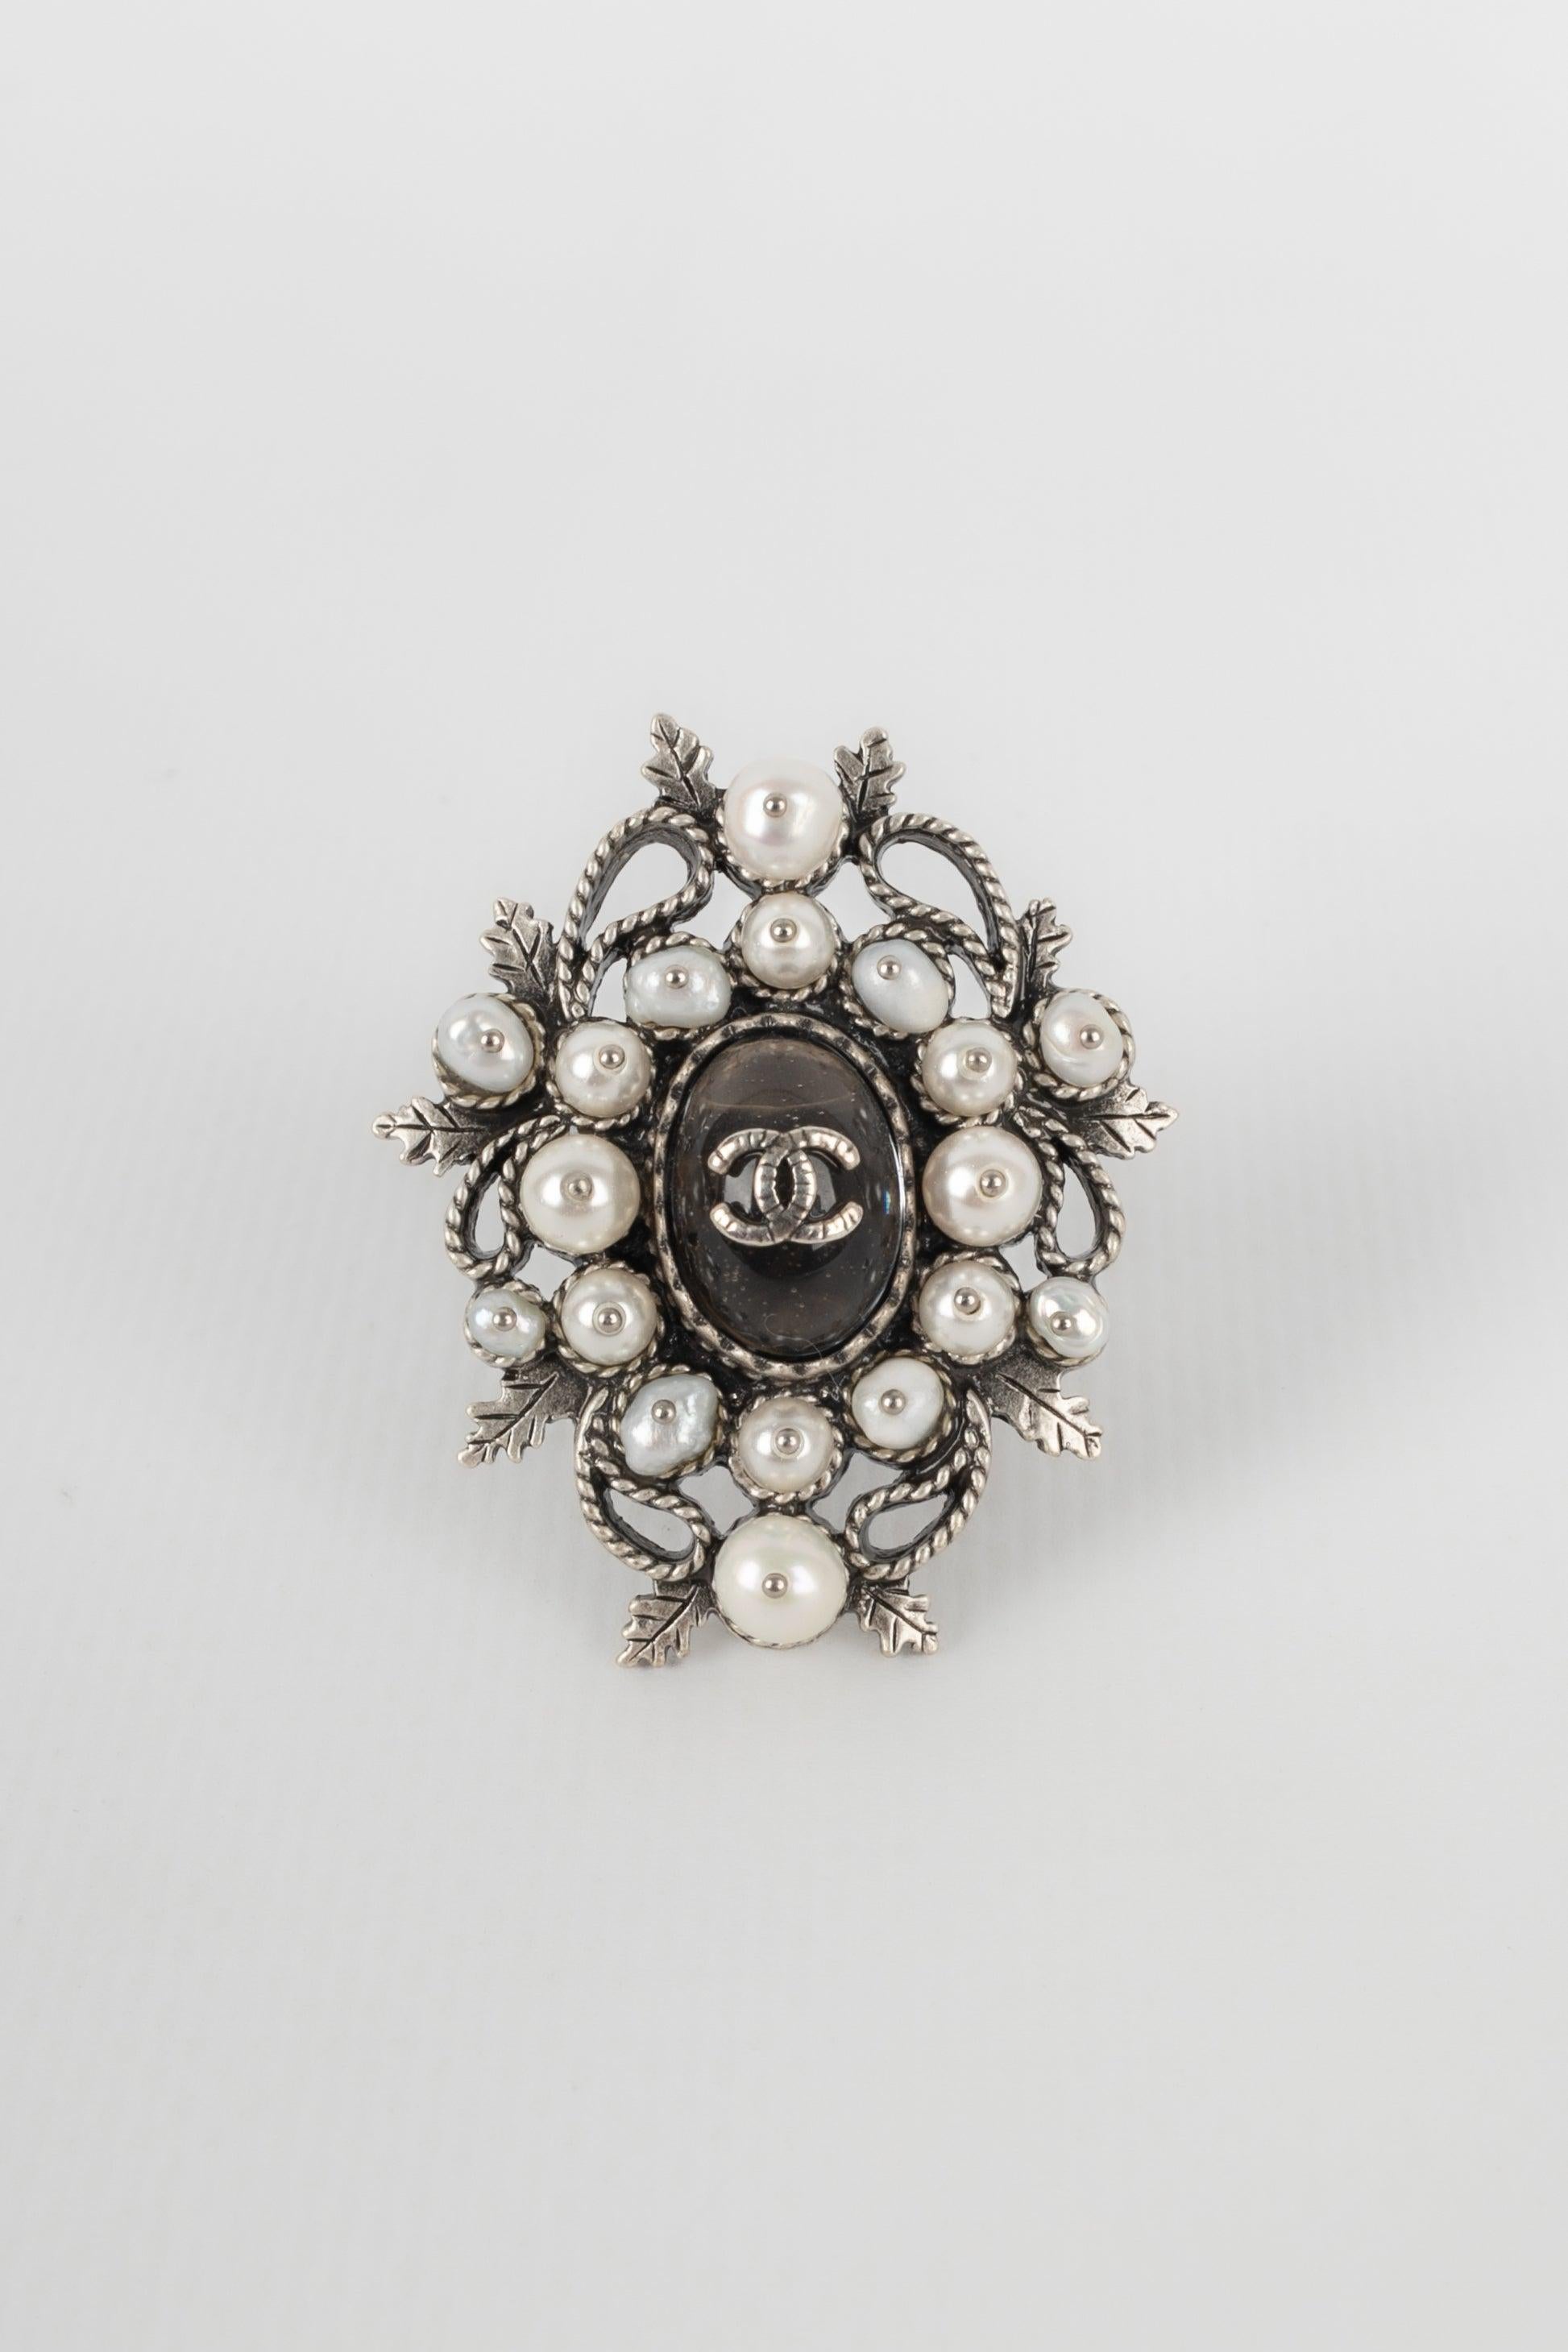 Chanel - (Fabriqué en France) Bague en métal argenté avec perles fantaisie. Collectional 2015.

Informations complémentaires :
Condit : Très bon état.
Dimensions : Taille 51
Période : 21ème siècle

Référence du vendeur : BGB7
